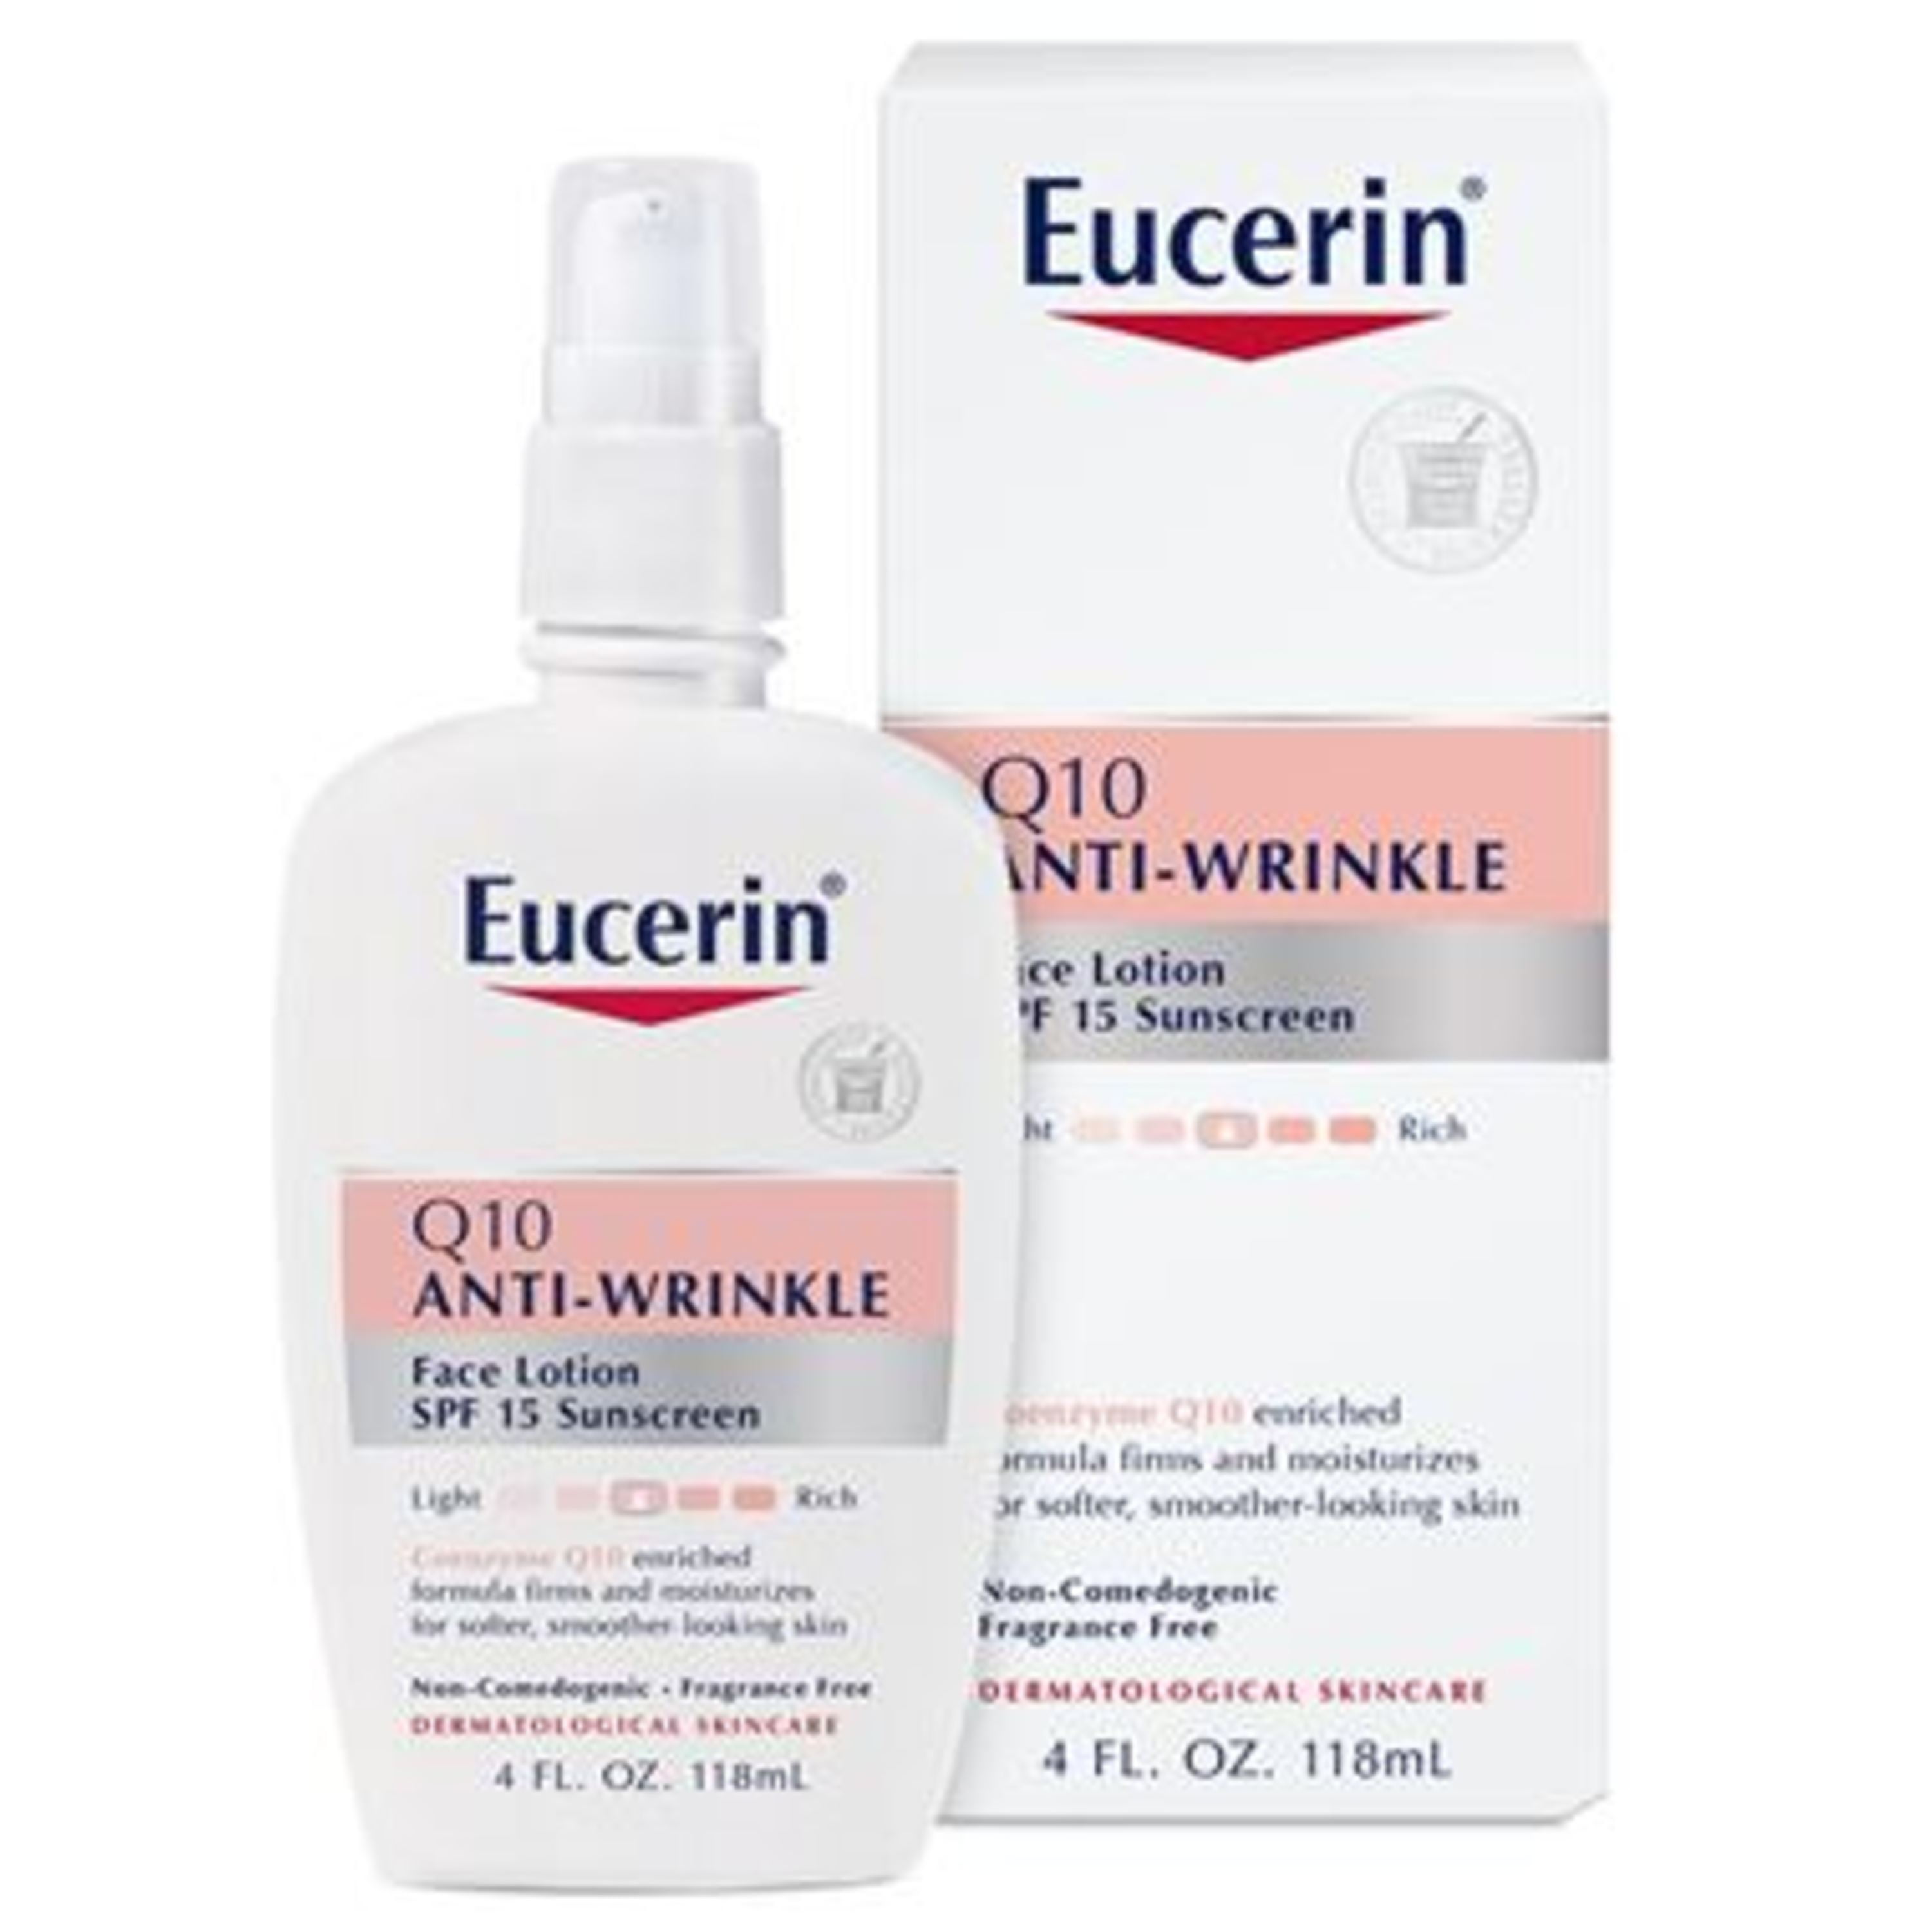 eucerin q10 ránctalanító arckrém makeupalley